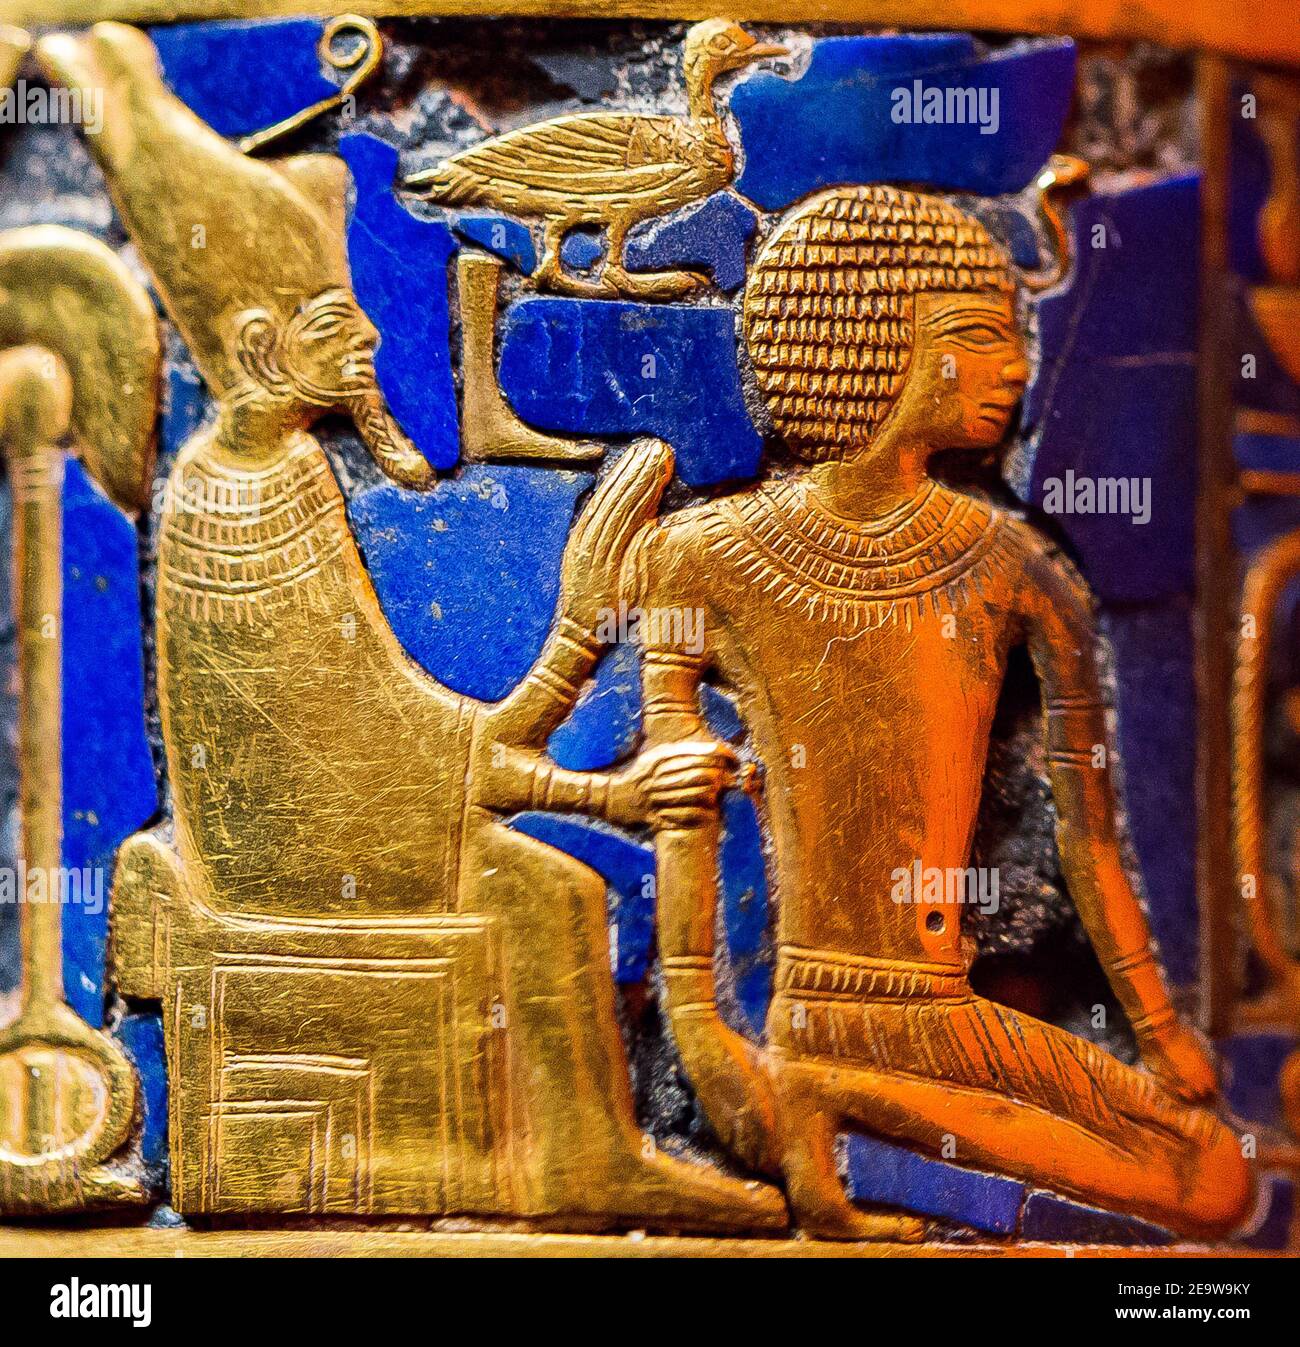 Cairo, Museo Egizio, bracciale d'oro trovato nella tomba della regina Ahhotep, la madre di Ahmosis, Dra Abu el Naga, Luxor. Rituale di incoronazione. Foto Stock